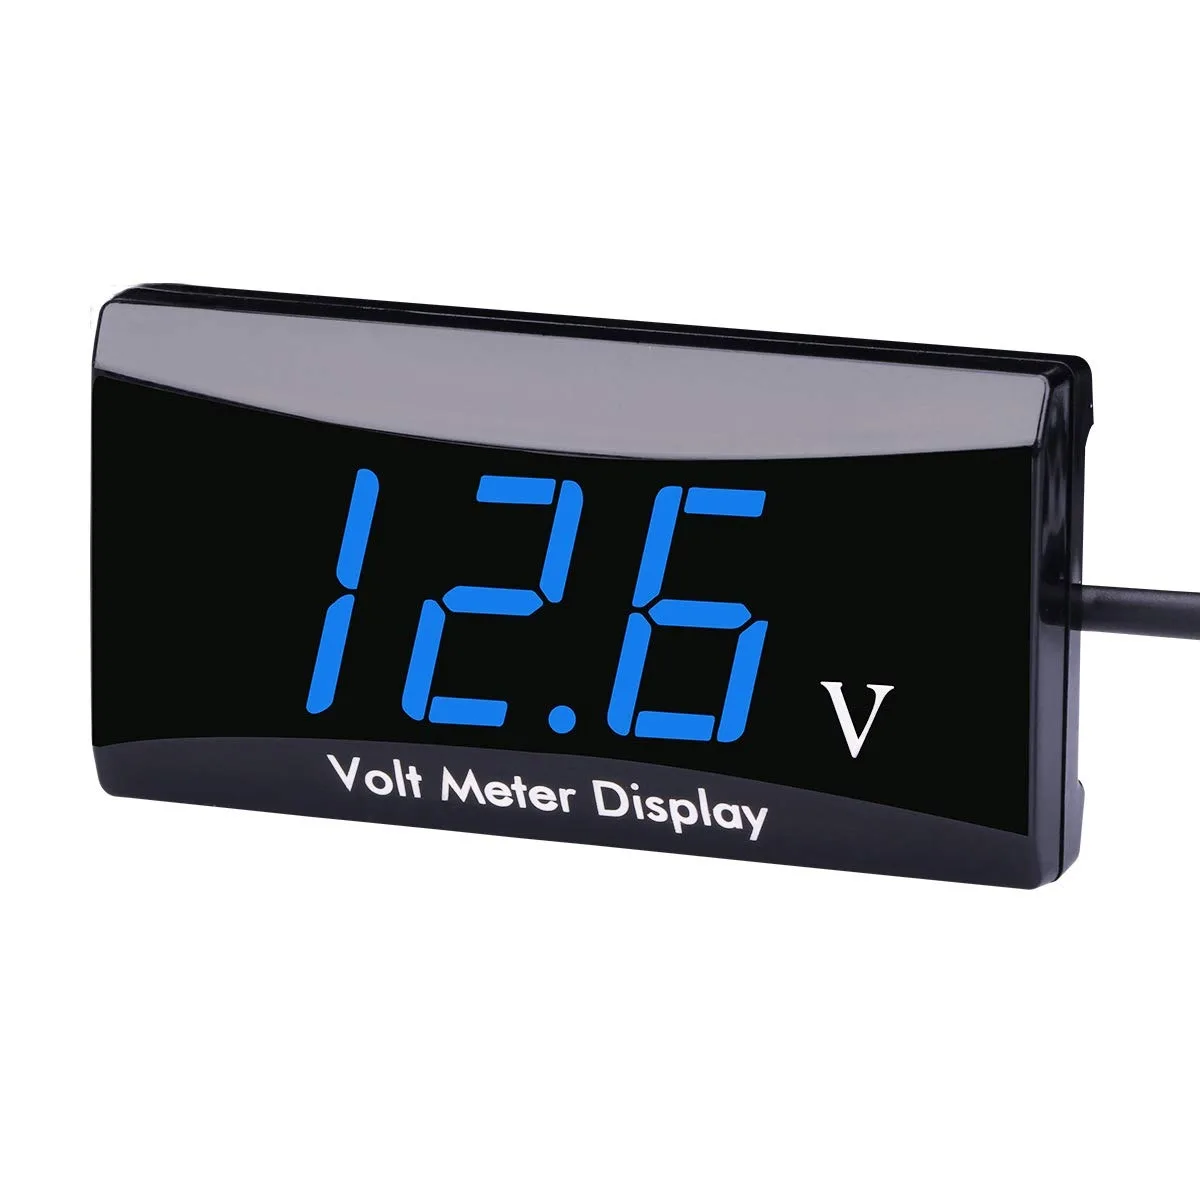 Mini Display a LED voltmetro digitale pannello Monitor Volt voltmetro Tester protezione connessione